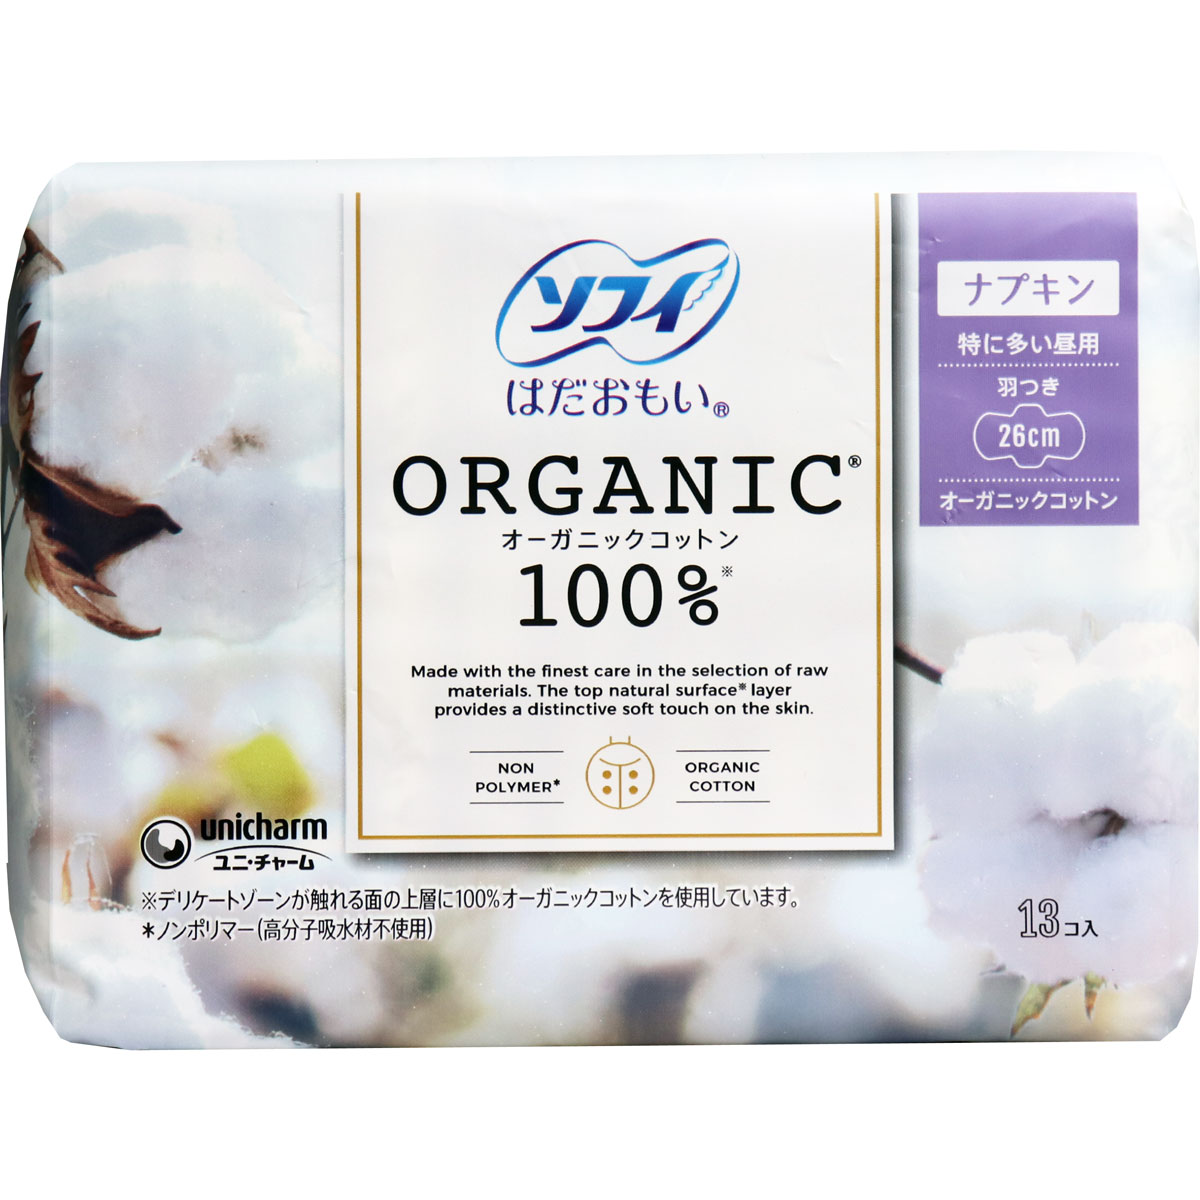 Гигиенические прокладки Sofy Organic Cotton 26 см 13 шт. - фото 1